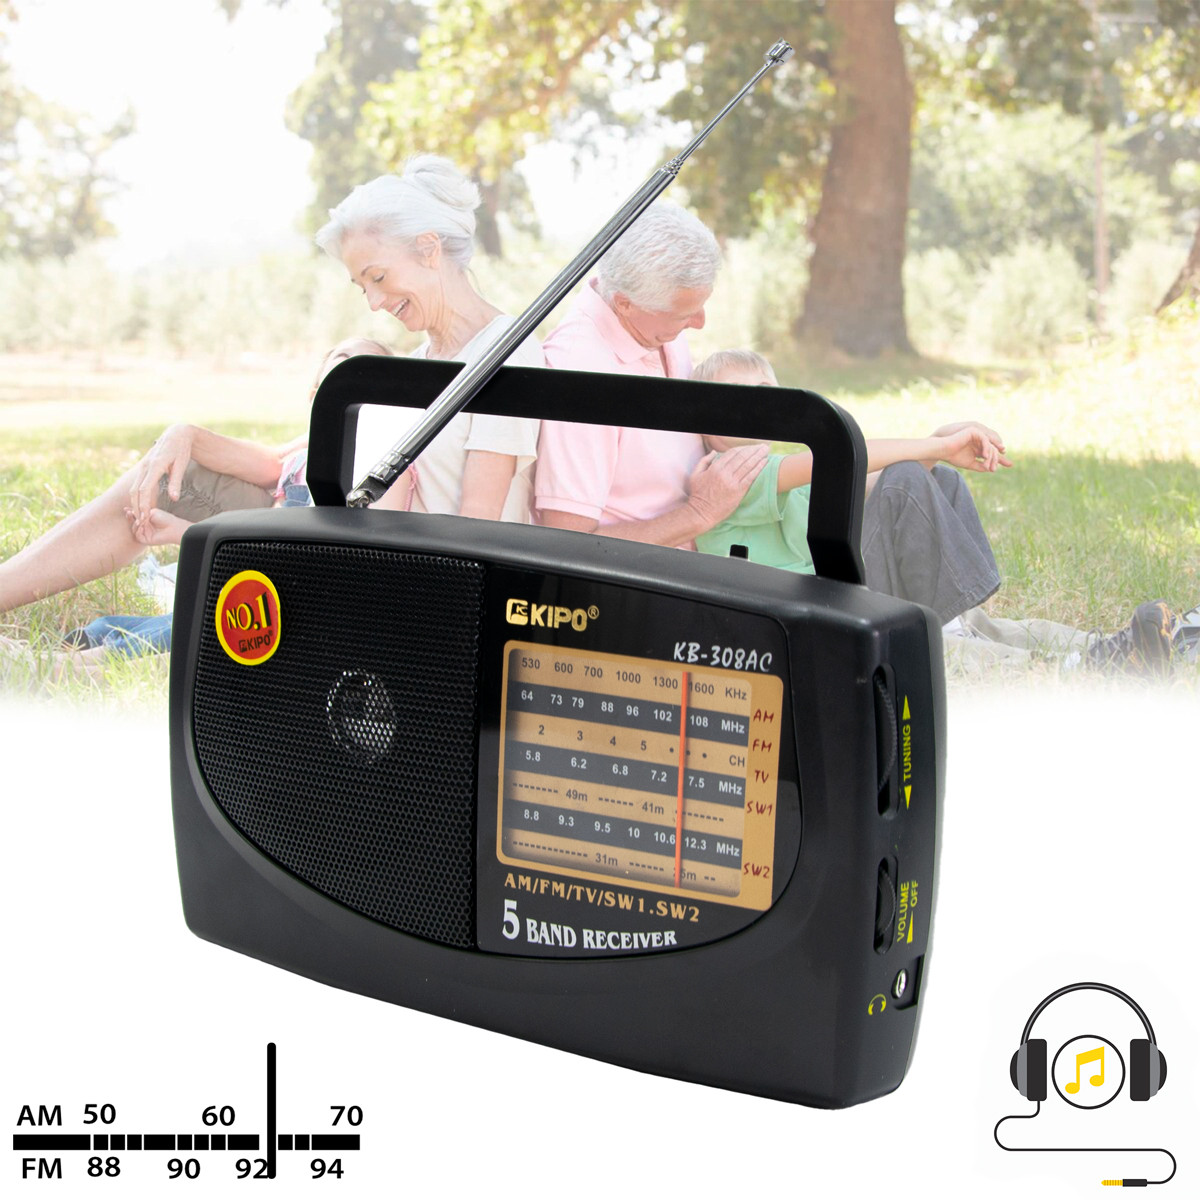 Міні радіоприймач FM/TV/AM/SW1-2 "Kipo KB-308AC", Чорний радіоприймач на кухню (радиоприемник фм), фото 1